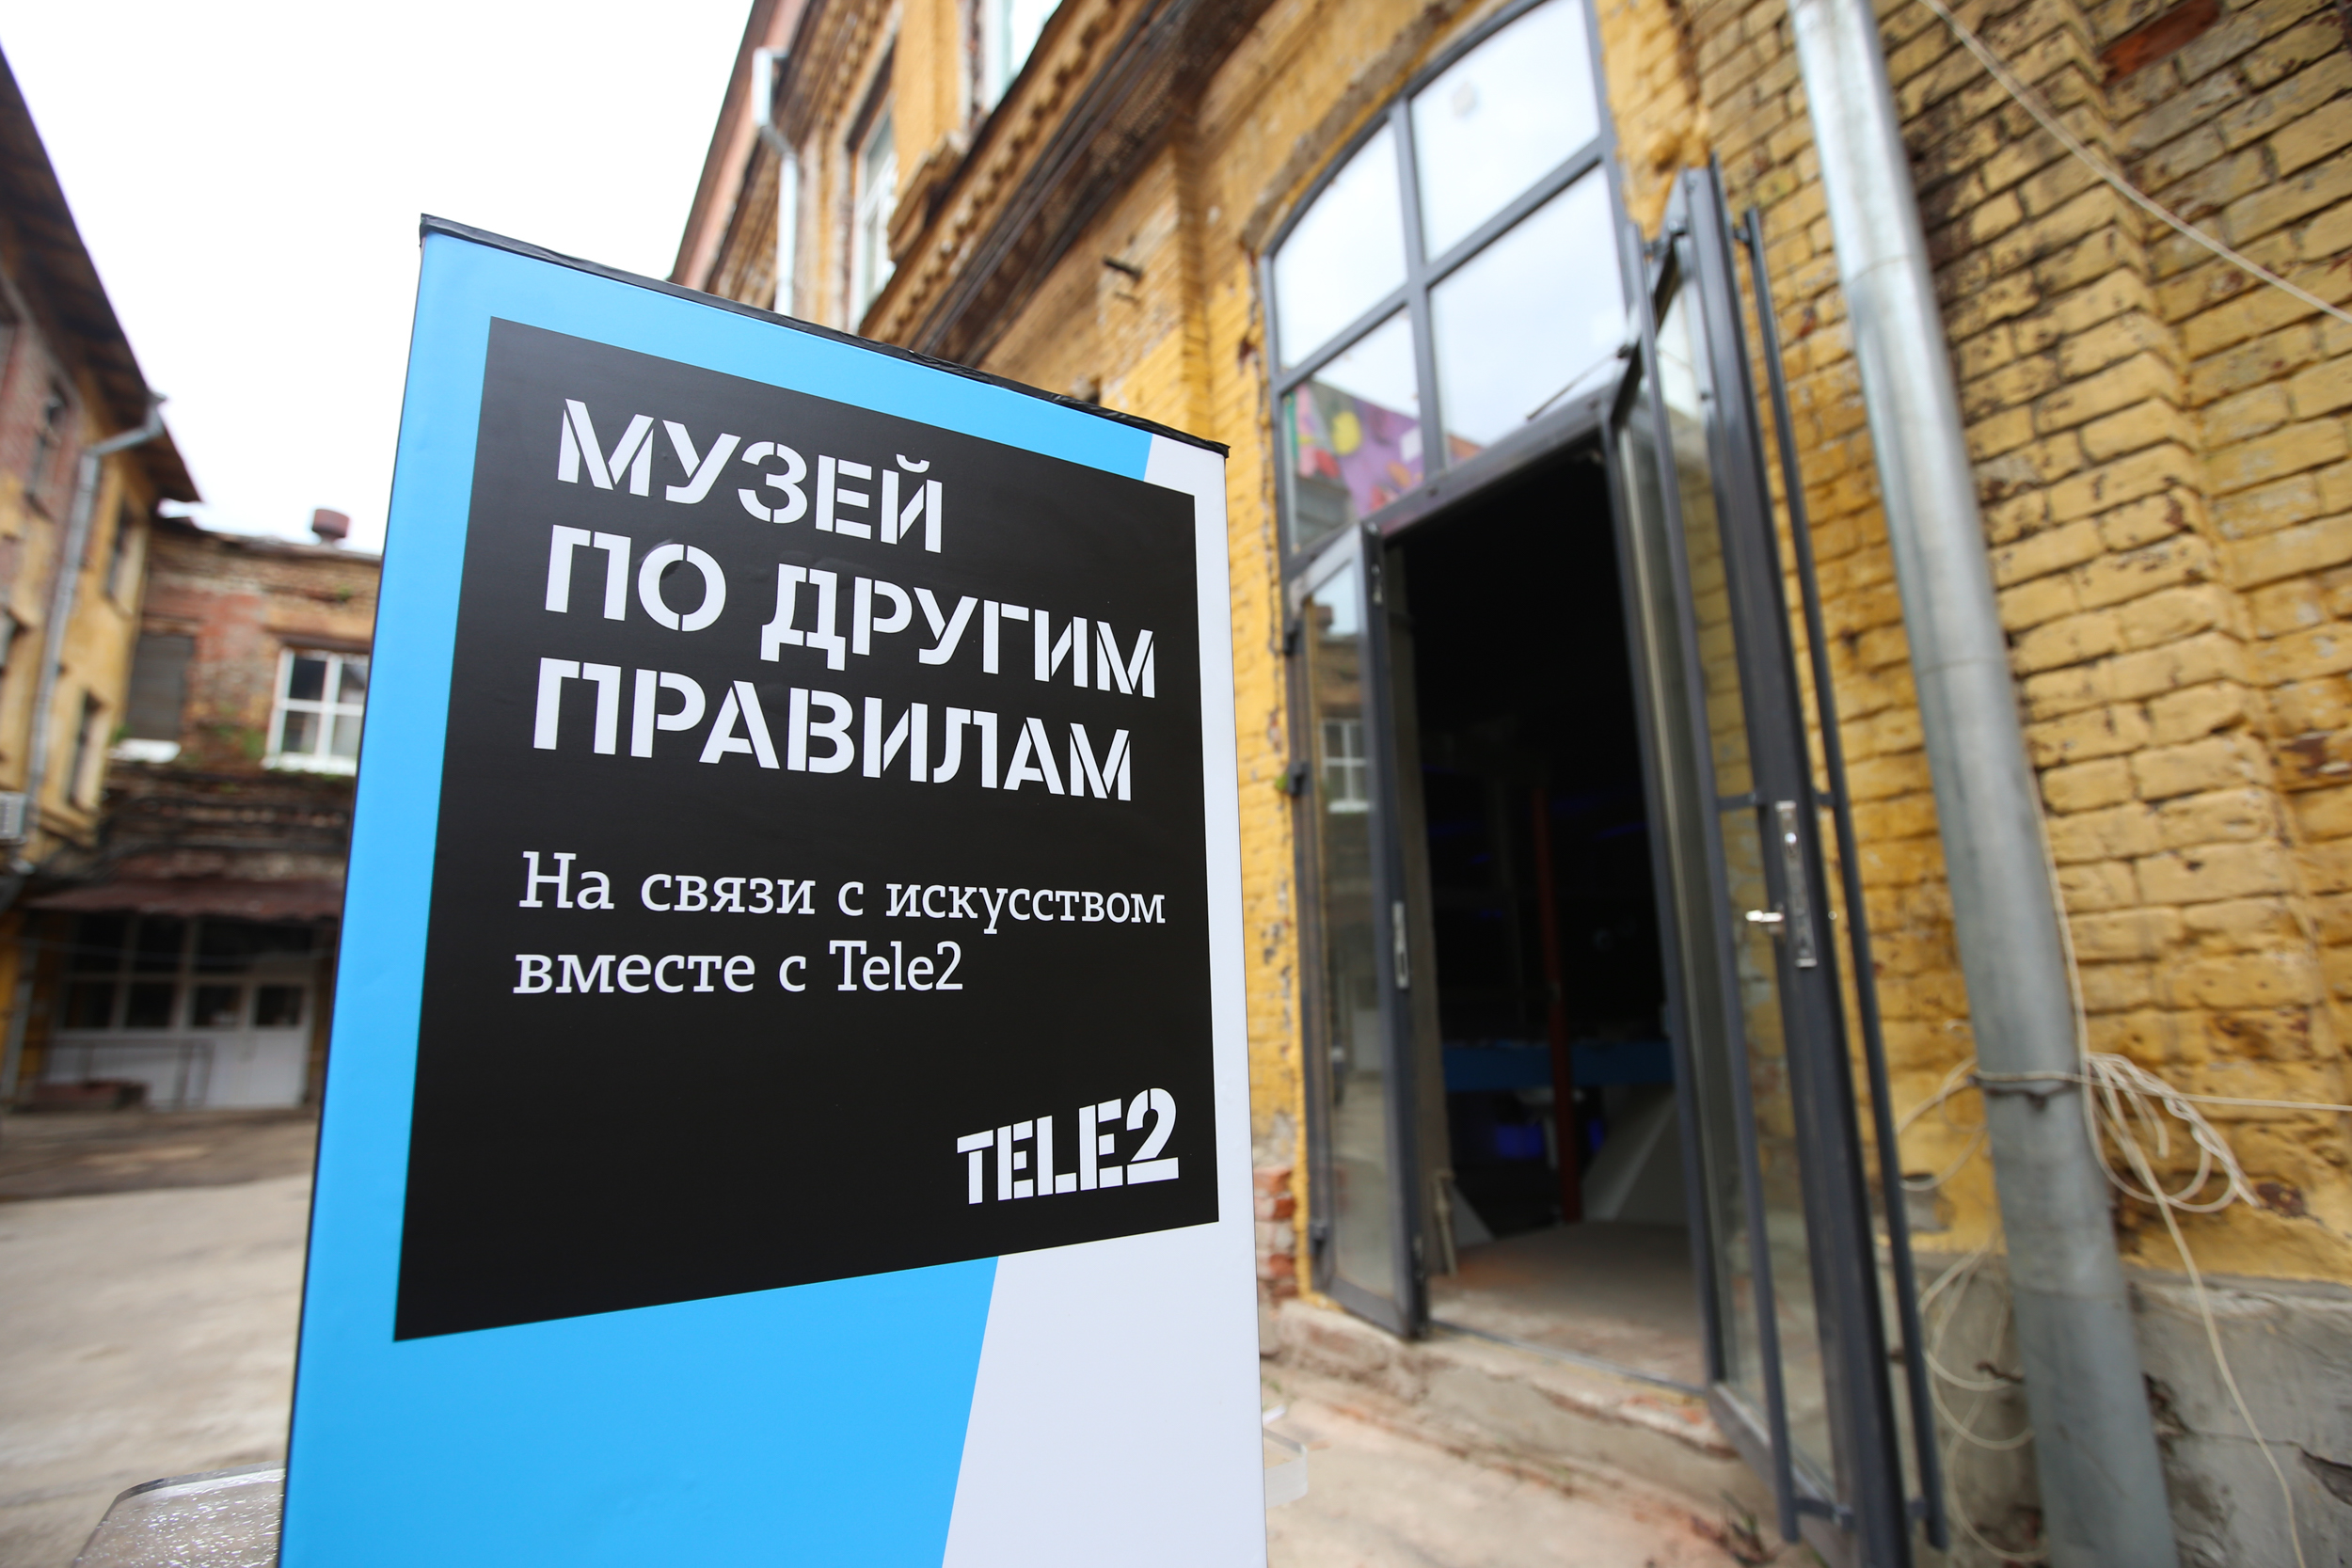 От наскальной живописи до 4G: уникальный музей развития технологий связи появился в Нижнем Новгороде - фото 2